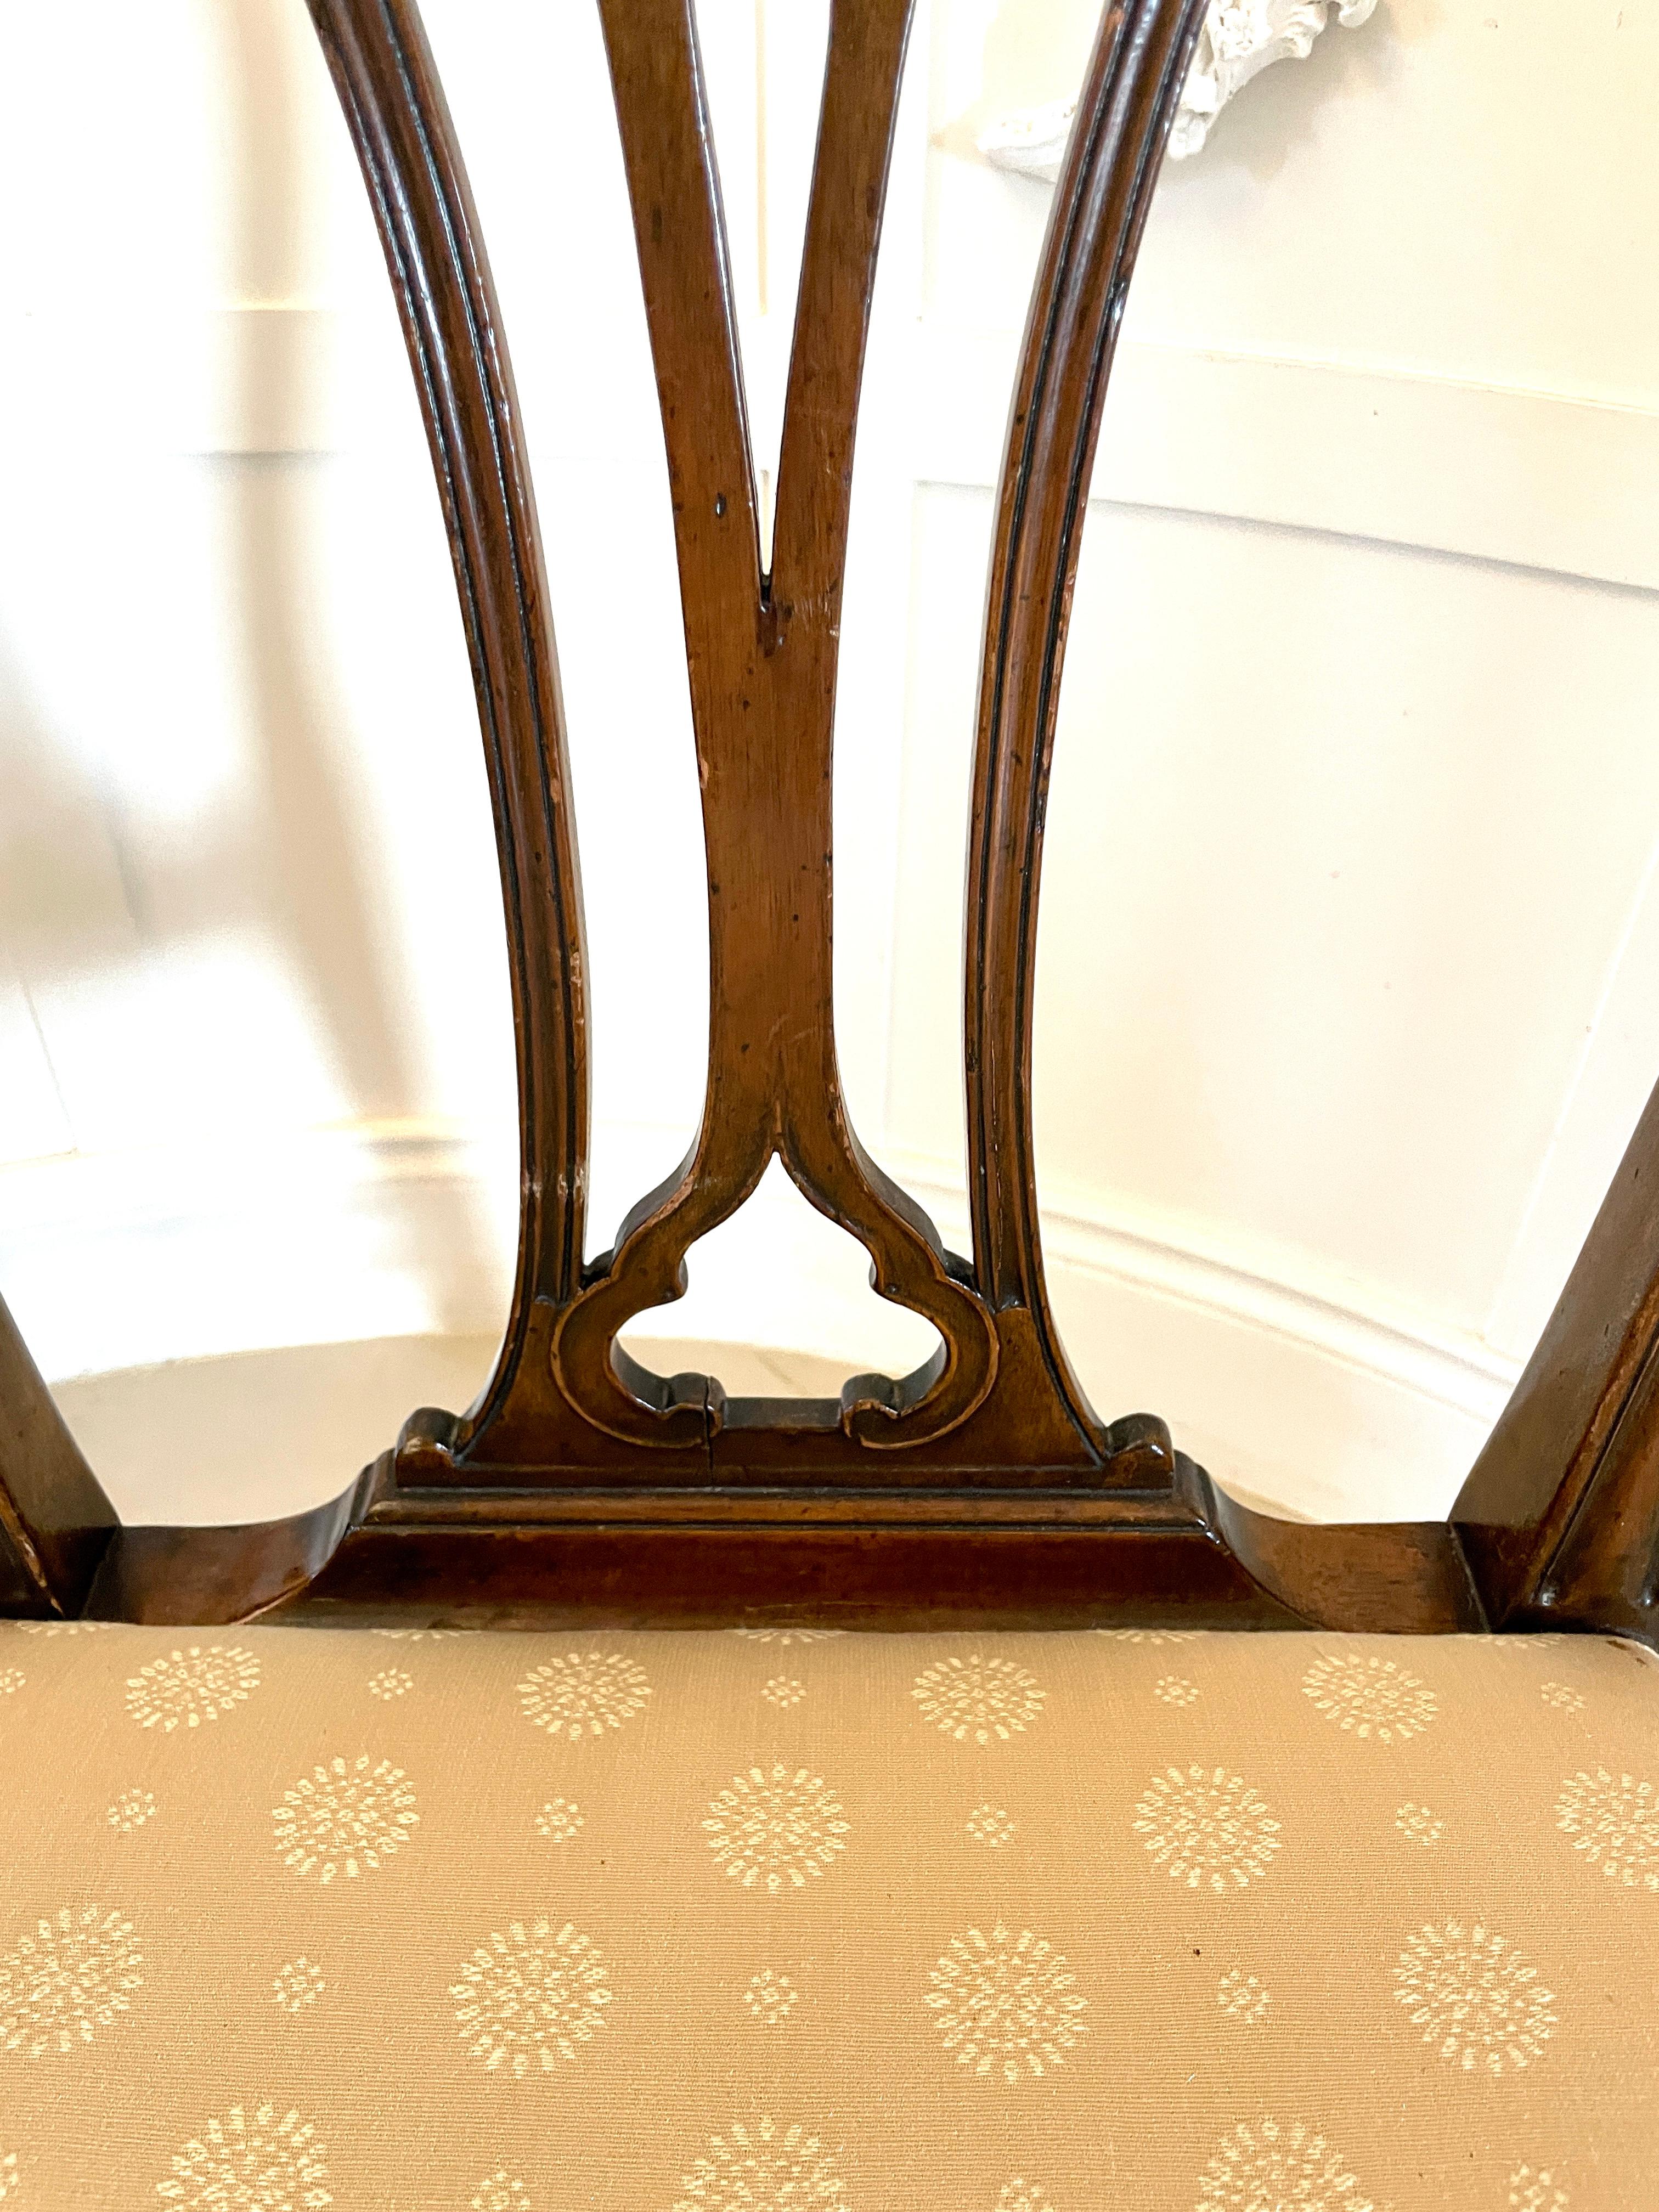 Ensemble de six chaises de salle à manger en acajou sculpté de qualité, datant du 19e siècle, comprenant deux chaises coudées et quatre chaises simples, ayant des dossiers en acajou sculpté de qualité, avec un dossier percé sculpté
les fauteuils